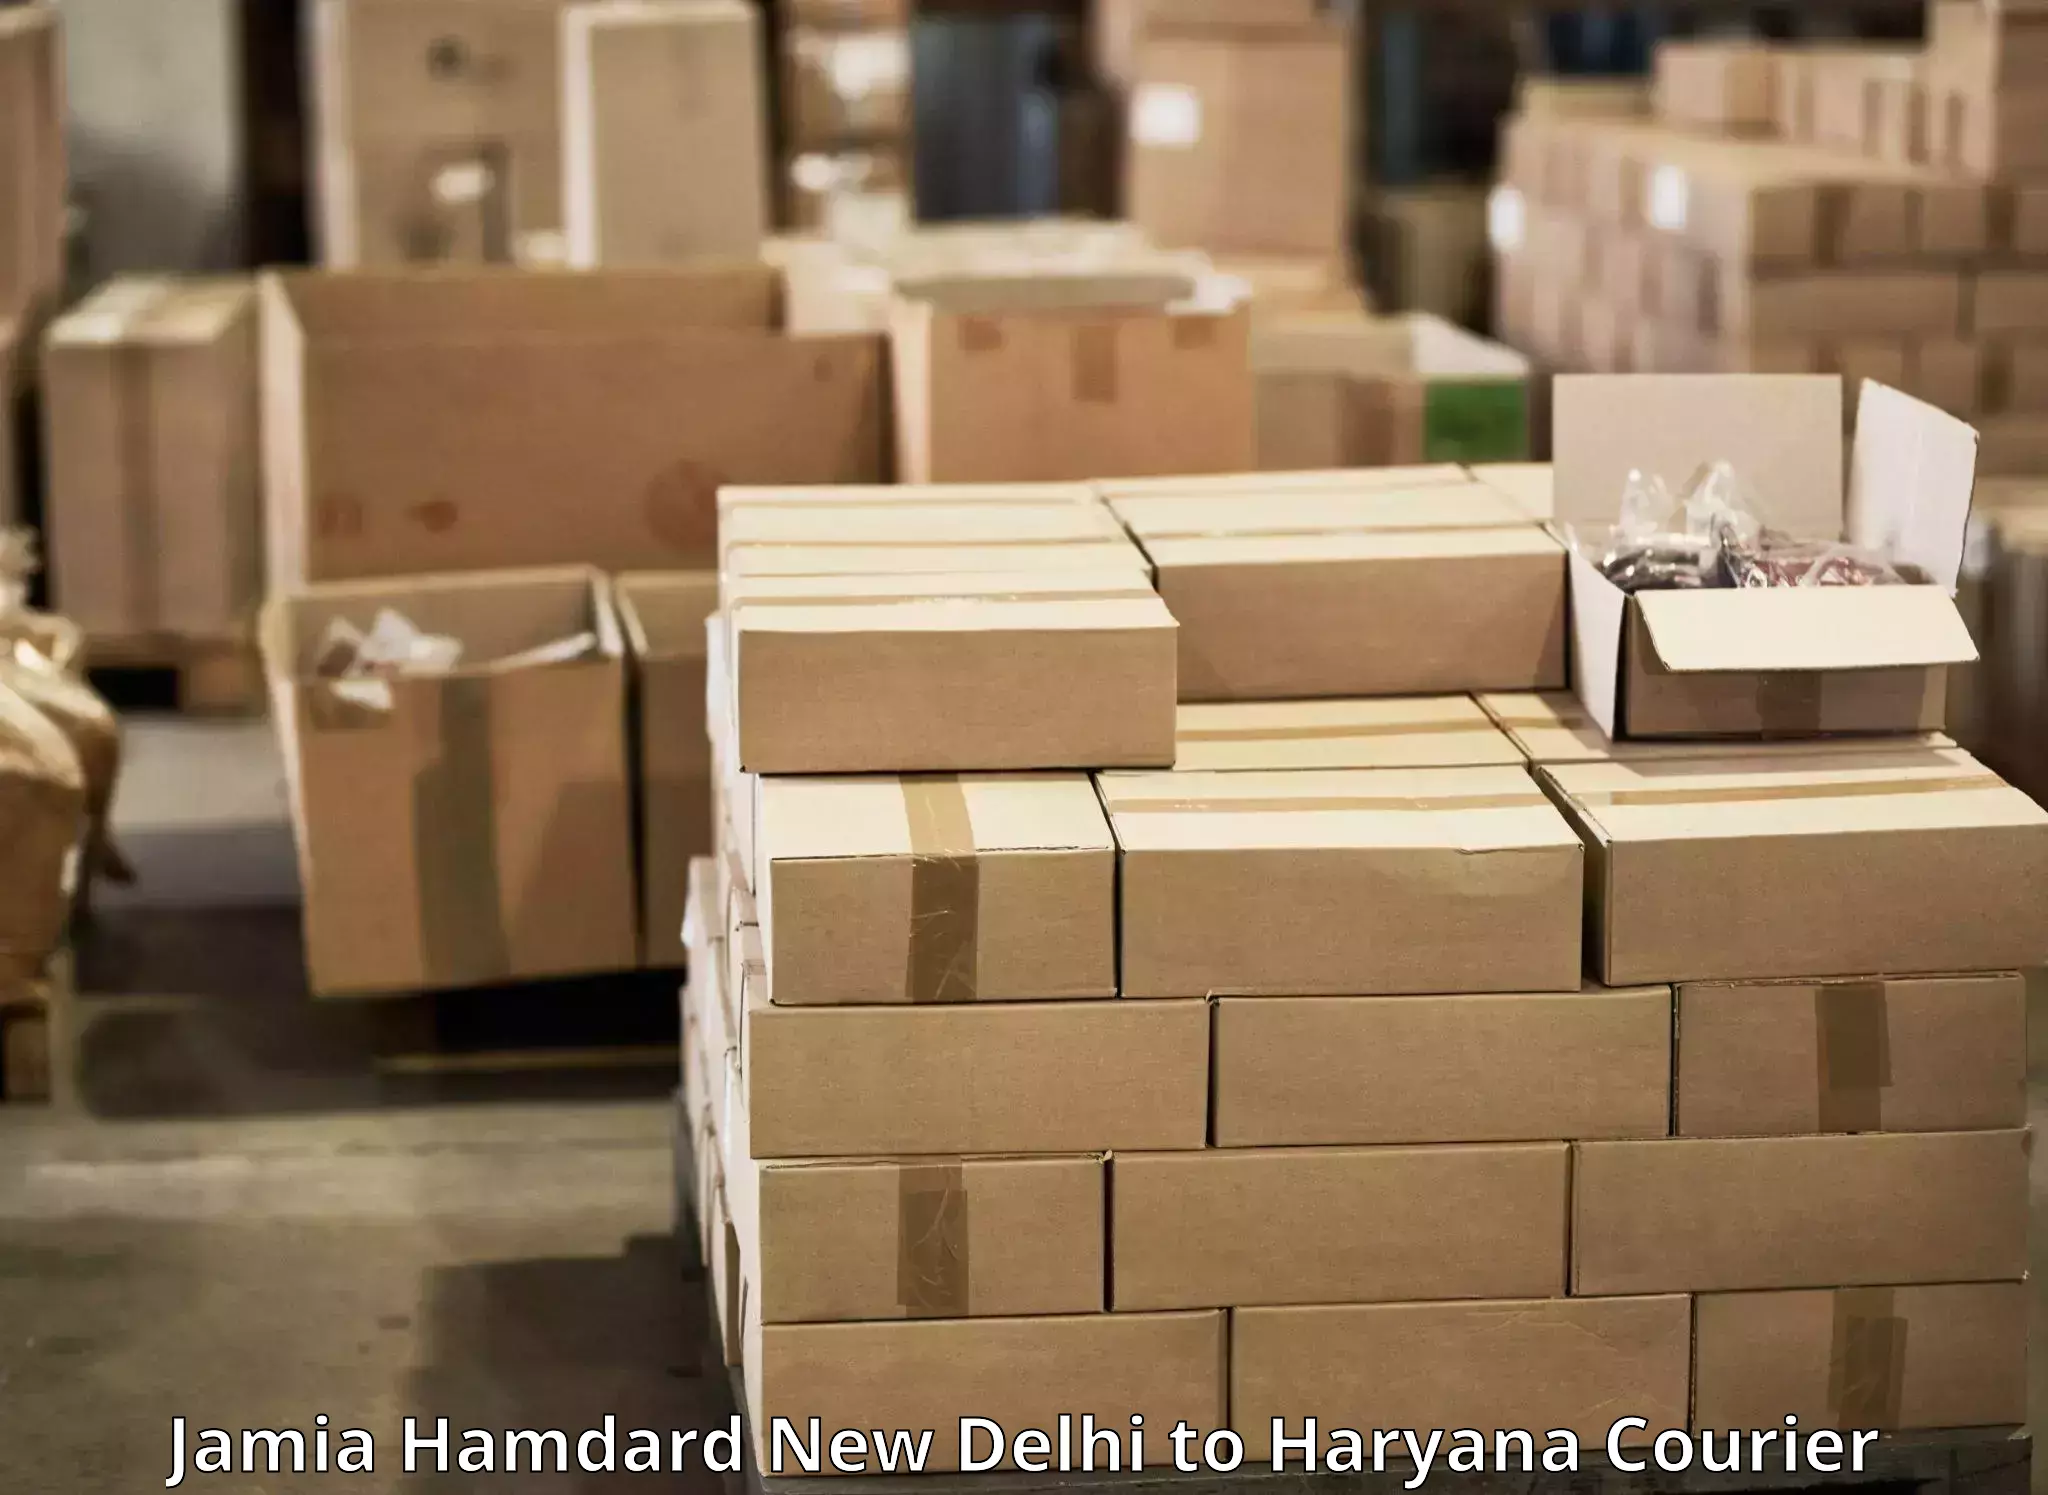 User-friendly delivery service Jamia Hamdard New Delhi to IIIT Sonepat